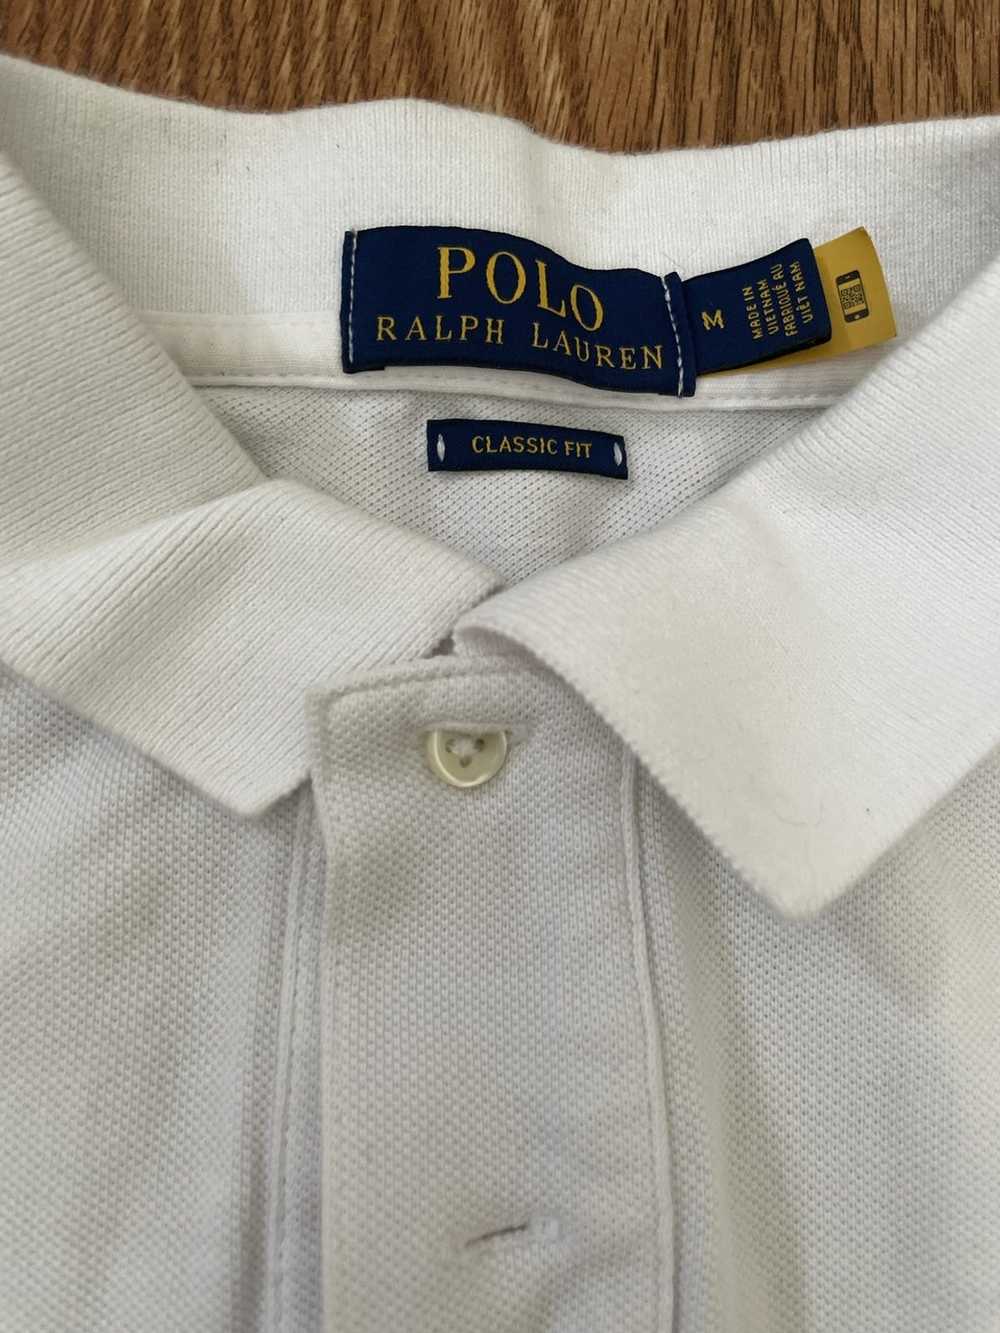 Polo Ralph Lauren Polo Ralph Luren - image 2